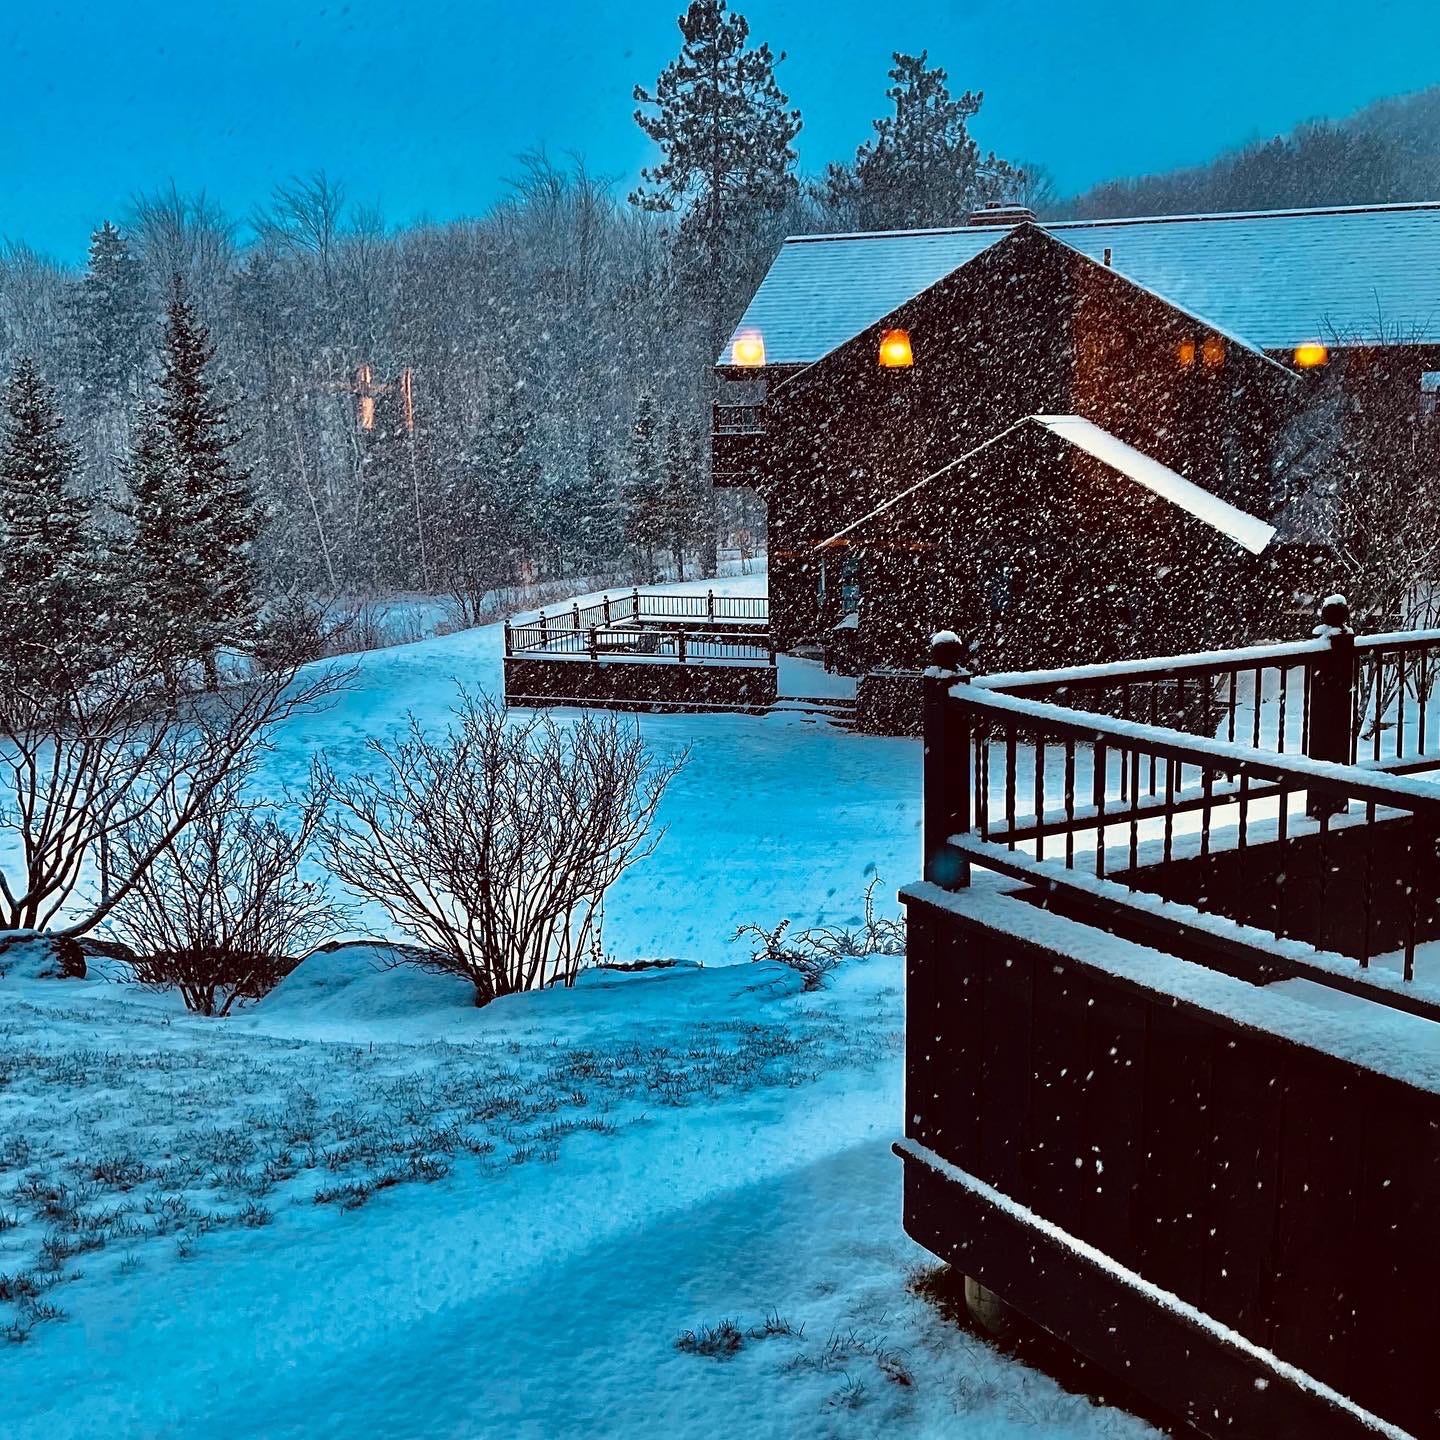 Snowy cabins with a dark blue dusky sky